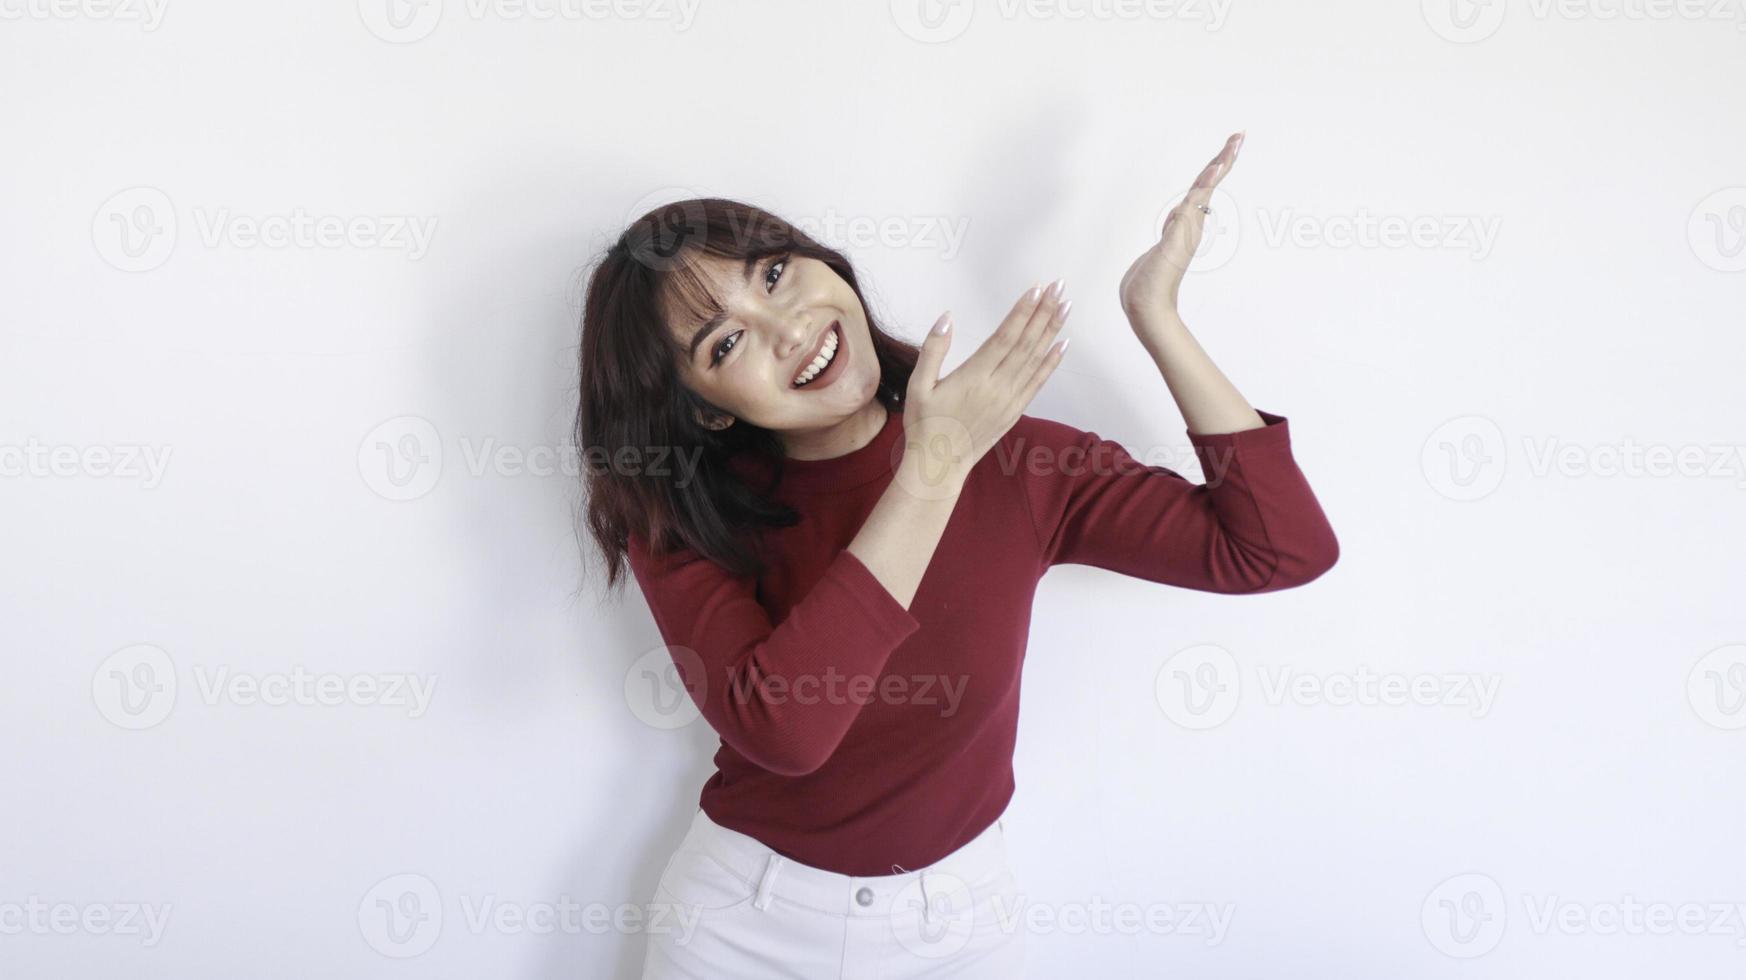 felice che punta sopra di una bella ragazza asiatica con una camicia rossa su sfondo bianco foto